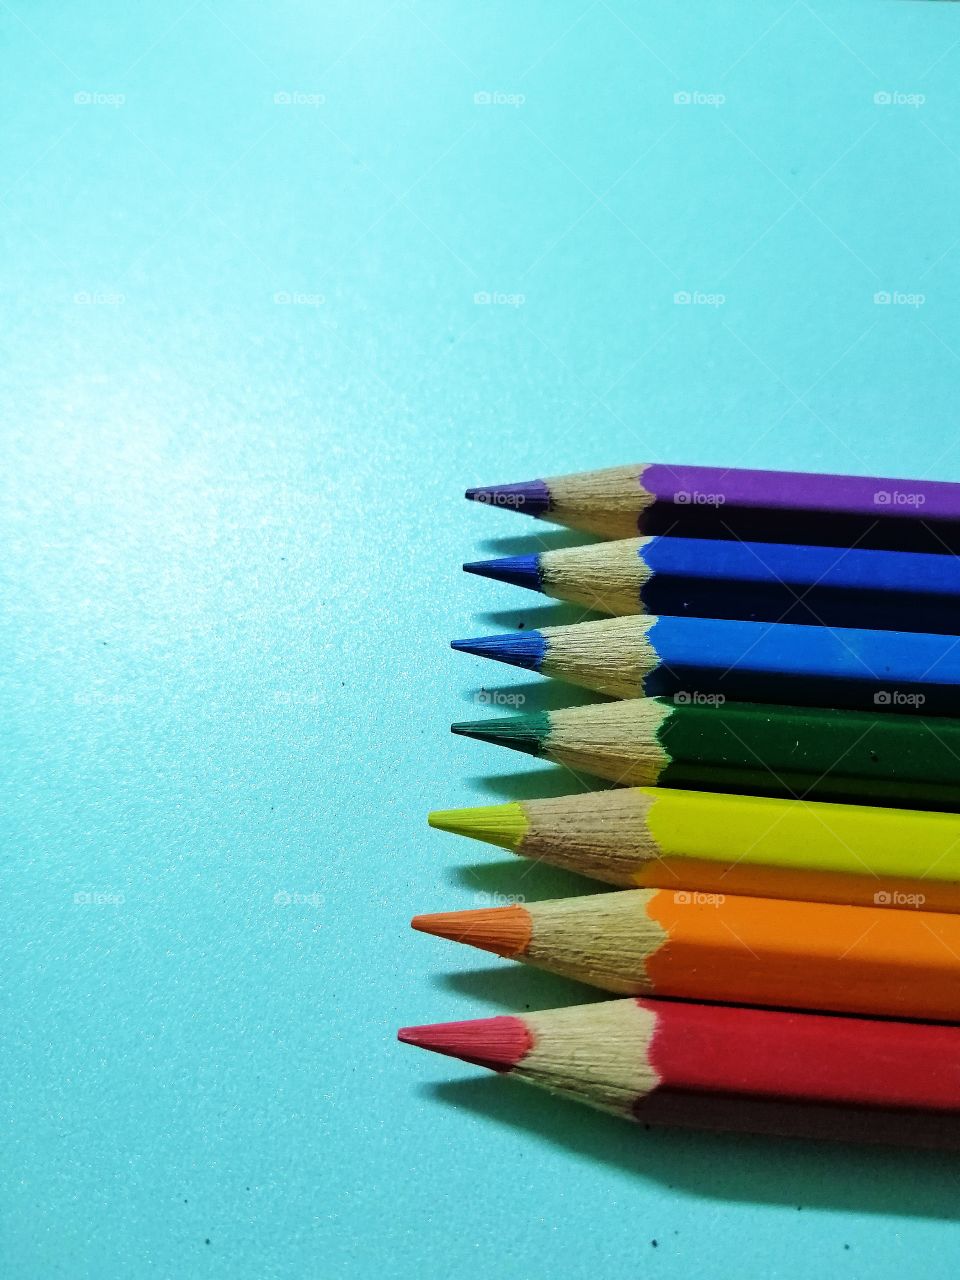 Watercolor pencils in rainbow colors.